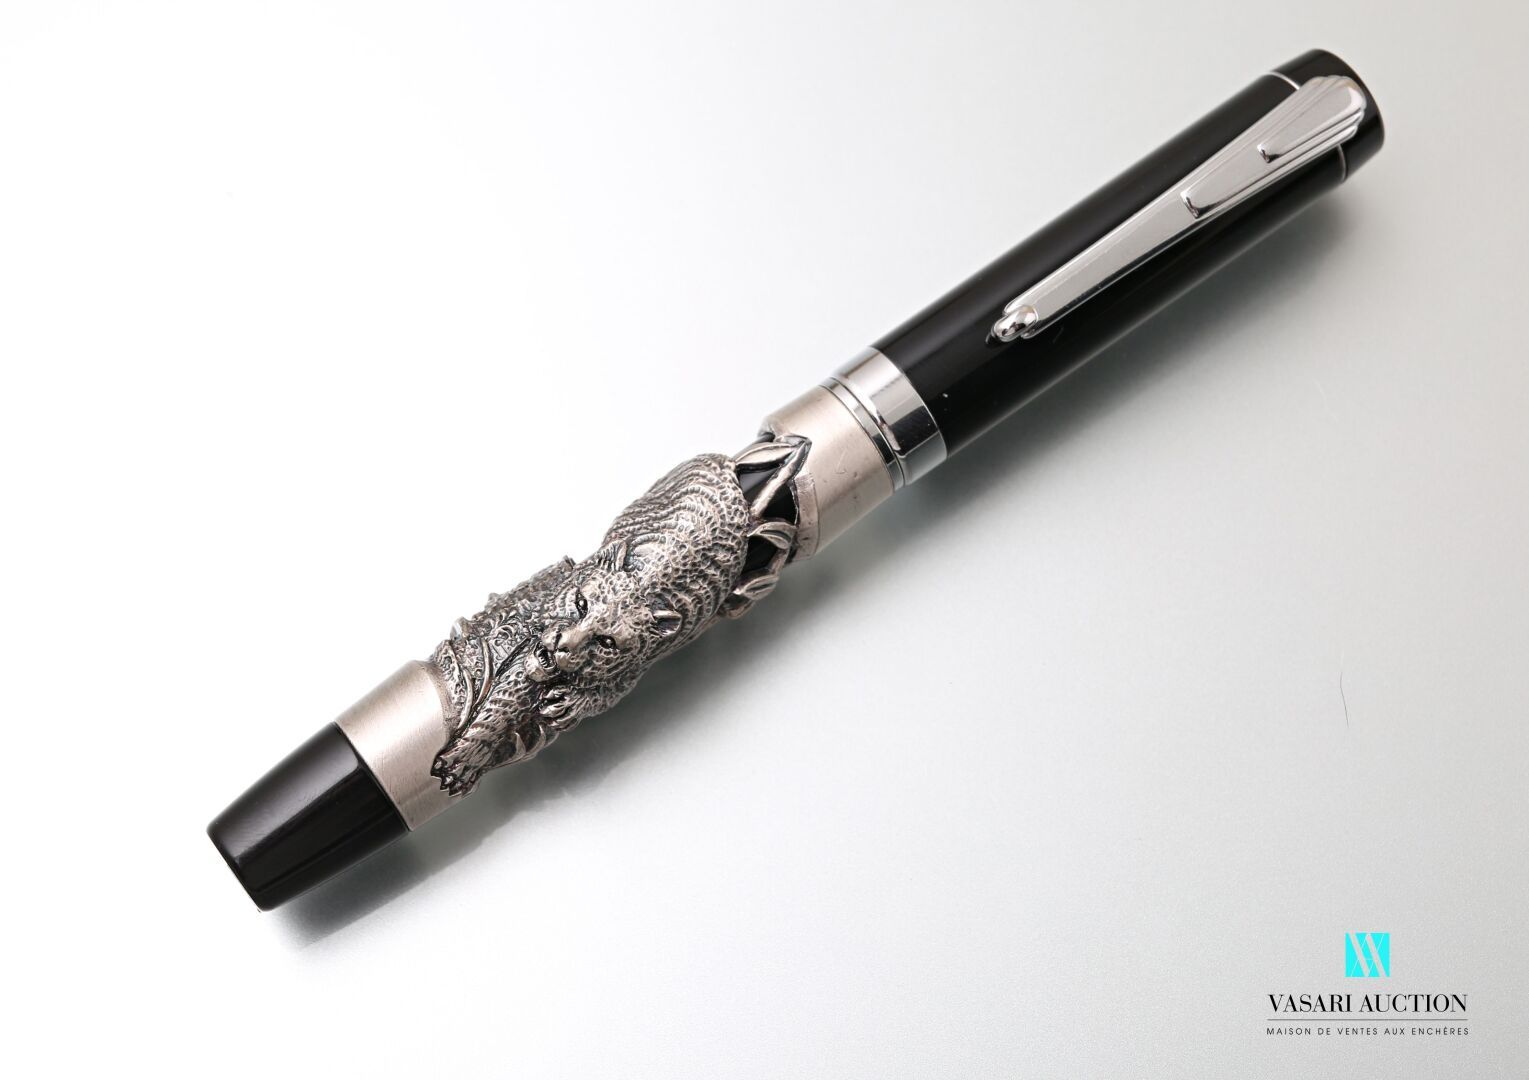 Null Penna in metallo laccato nero con tigre argentata.

Peso lordo: 72,03 g